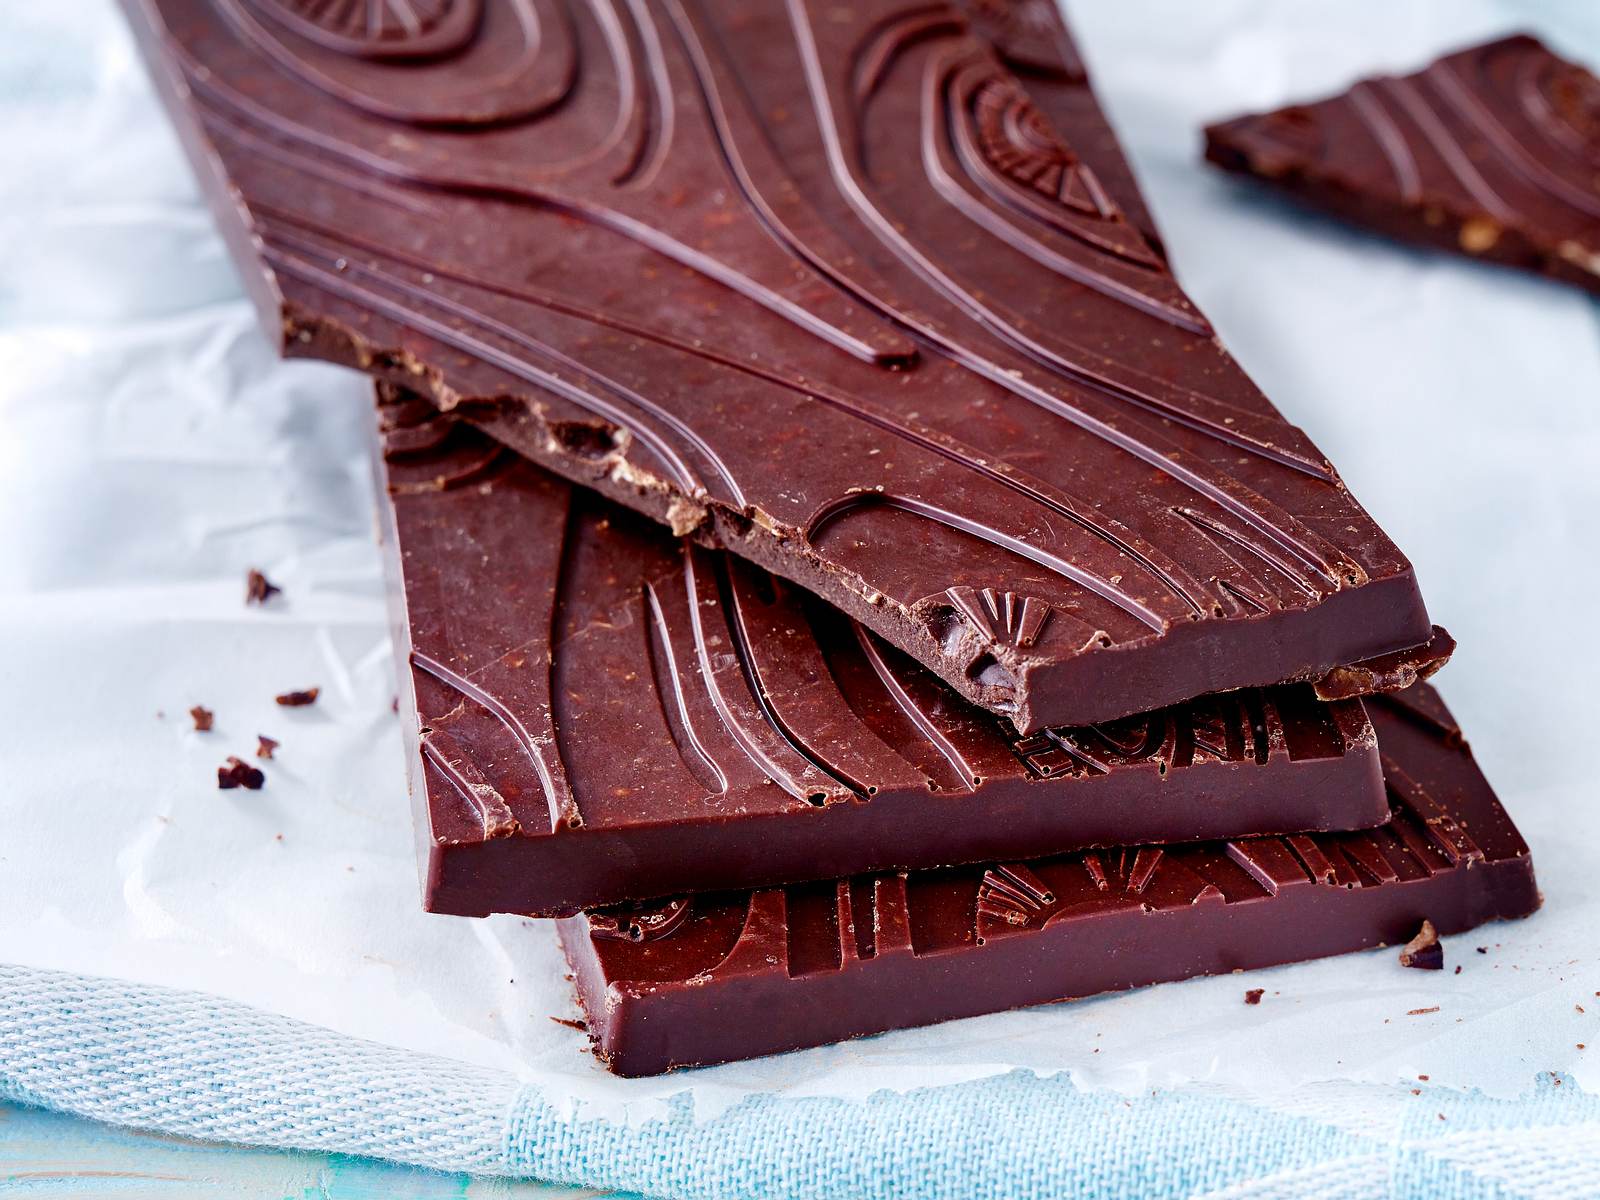 Schokolade - süße Versuchung mit zartem Schmelz | LECKER